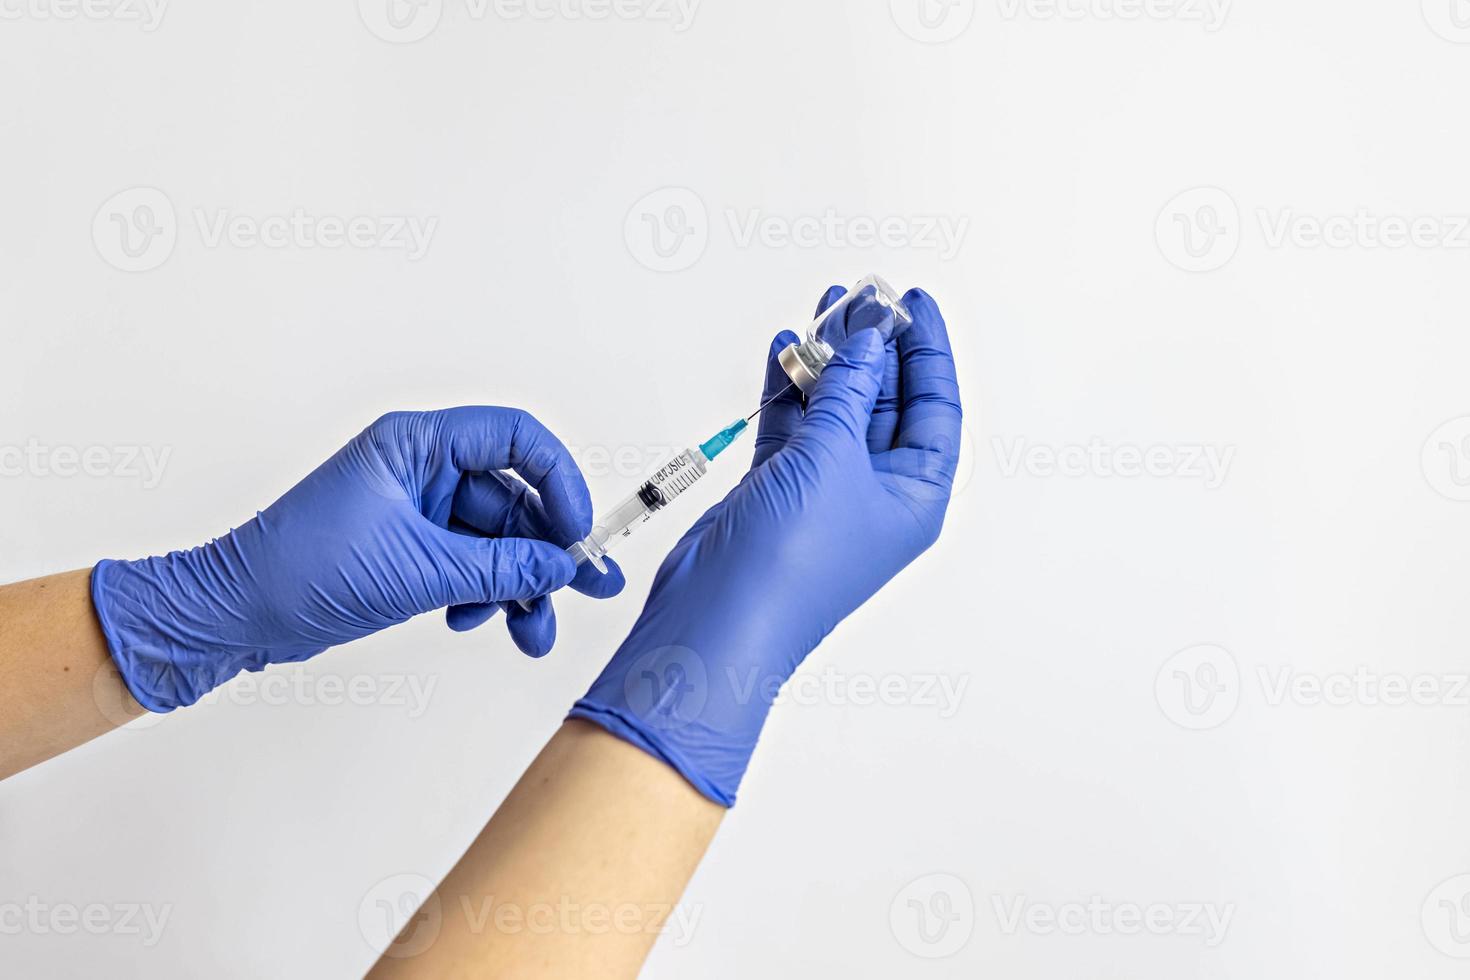 en medicinsk arbetare i medicinska handskar drar en dos av coronavirusvaccin i en spruta. begreppet vaccination, immunisering, förebyggande av människor från covid-19 foto